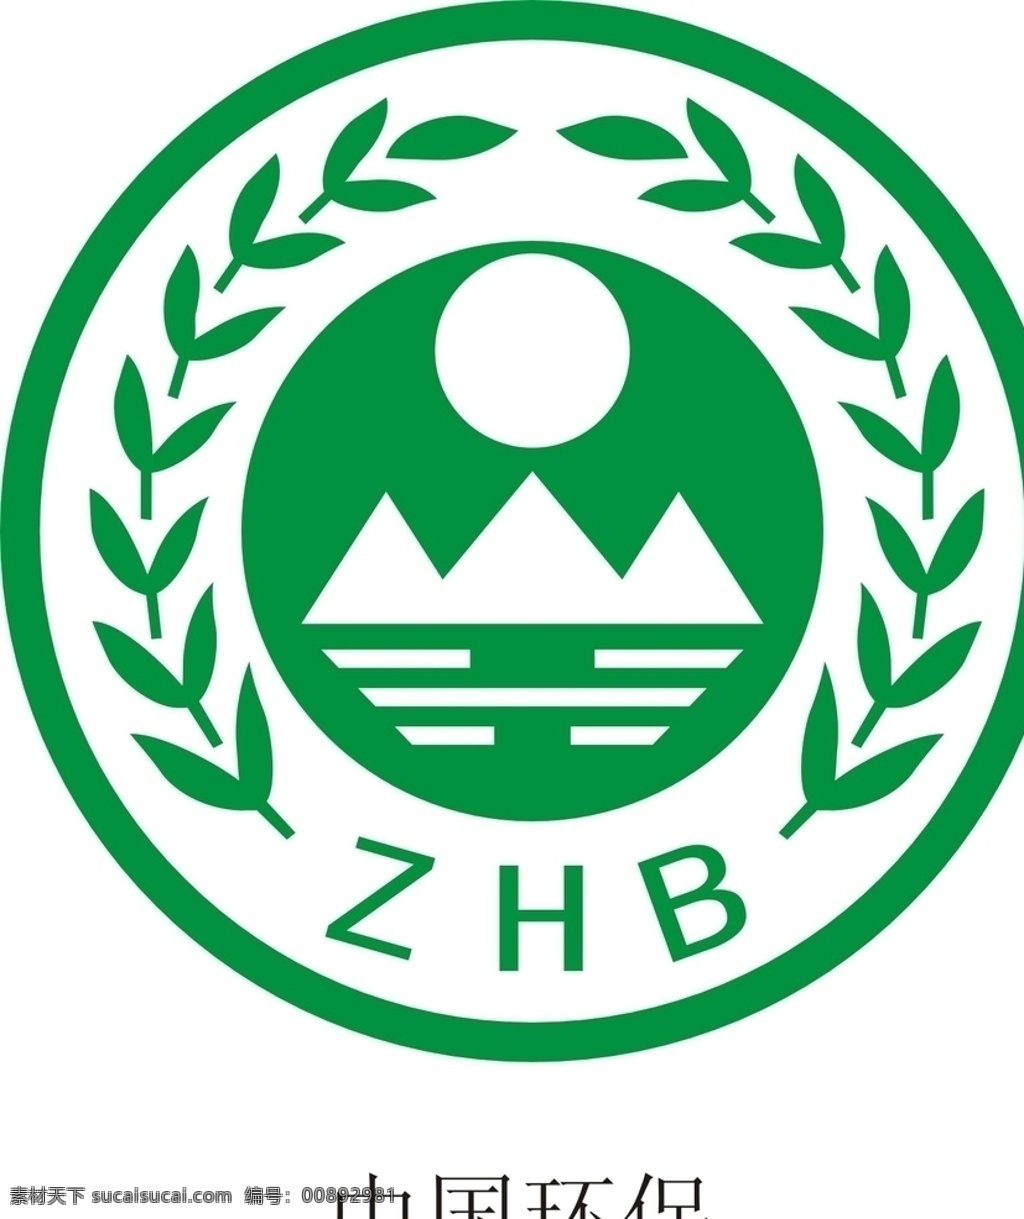 中国环保图片 中国环保标志 环保标志 环保 中国环保 环保标识 环保logo zhb 公共标识 标志图标 公共标识标志